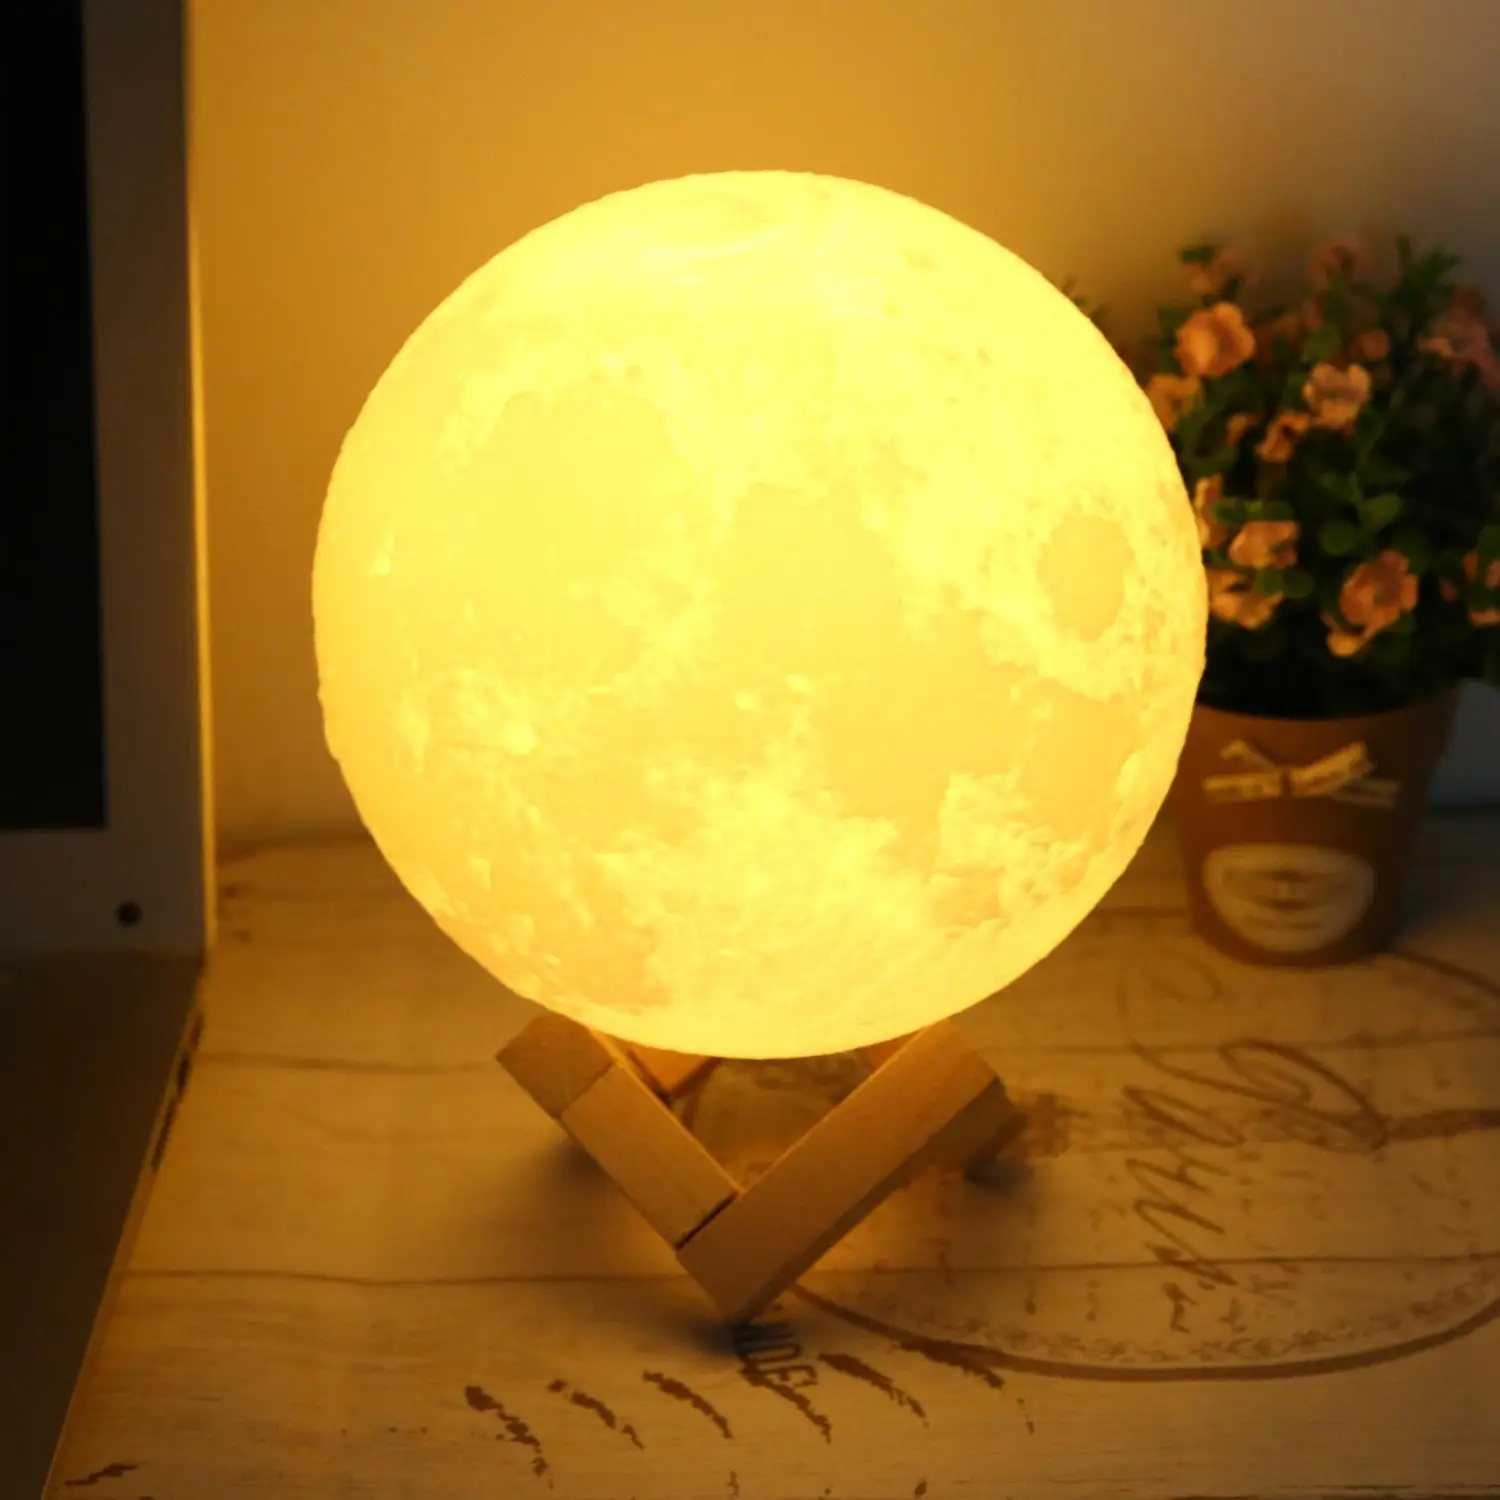 Меняющаяся лампа сенсорный цвет луна подарок светодио дный лампа лунный свет настольная 494 г 3D ночник USB прикроватный датчик ночник лампа 9 h